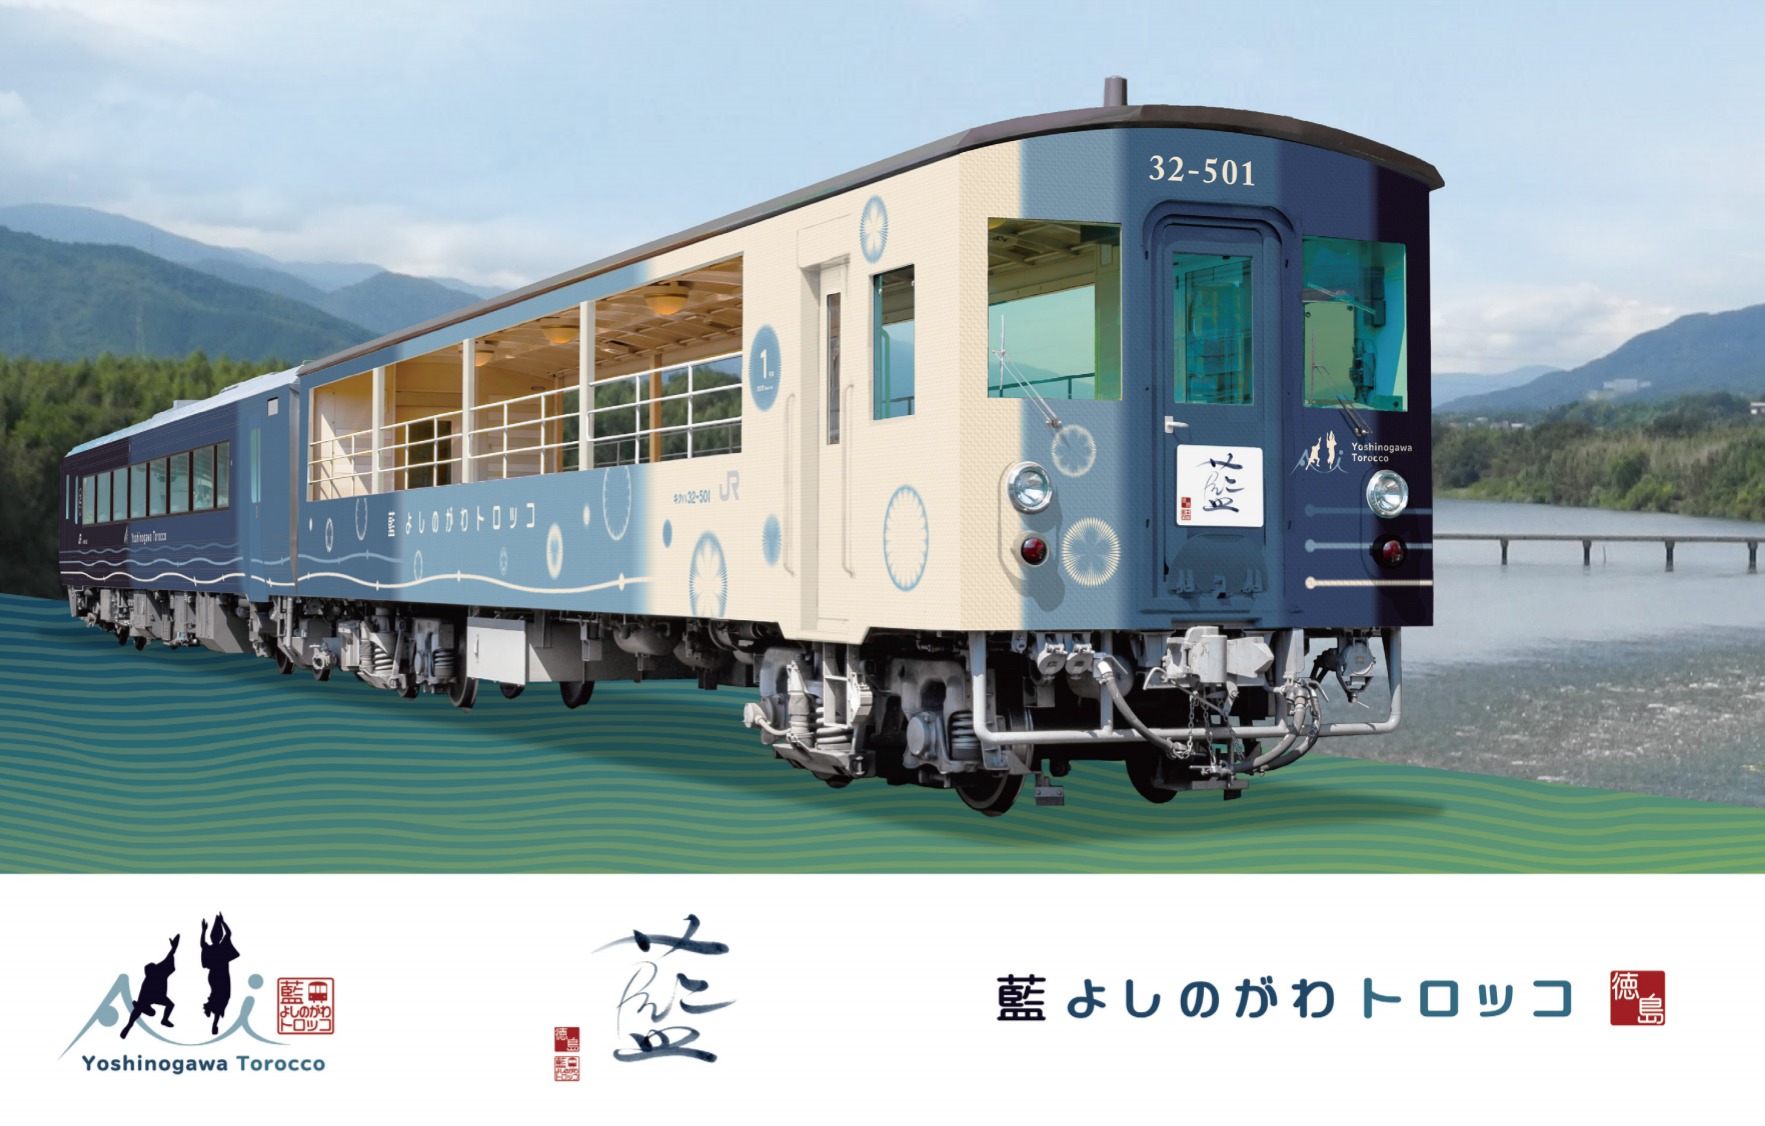 【JR四国】徳島線で「藍よしのがわトロッコ」を新たに運転へ　キハ185形とキクハ32形を連結